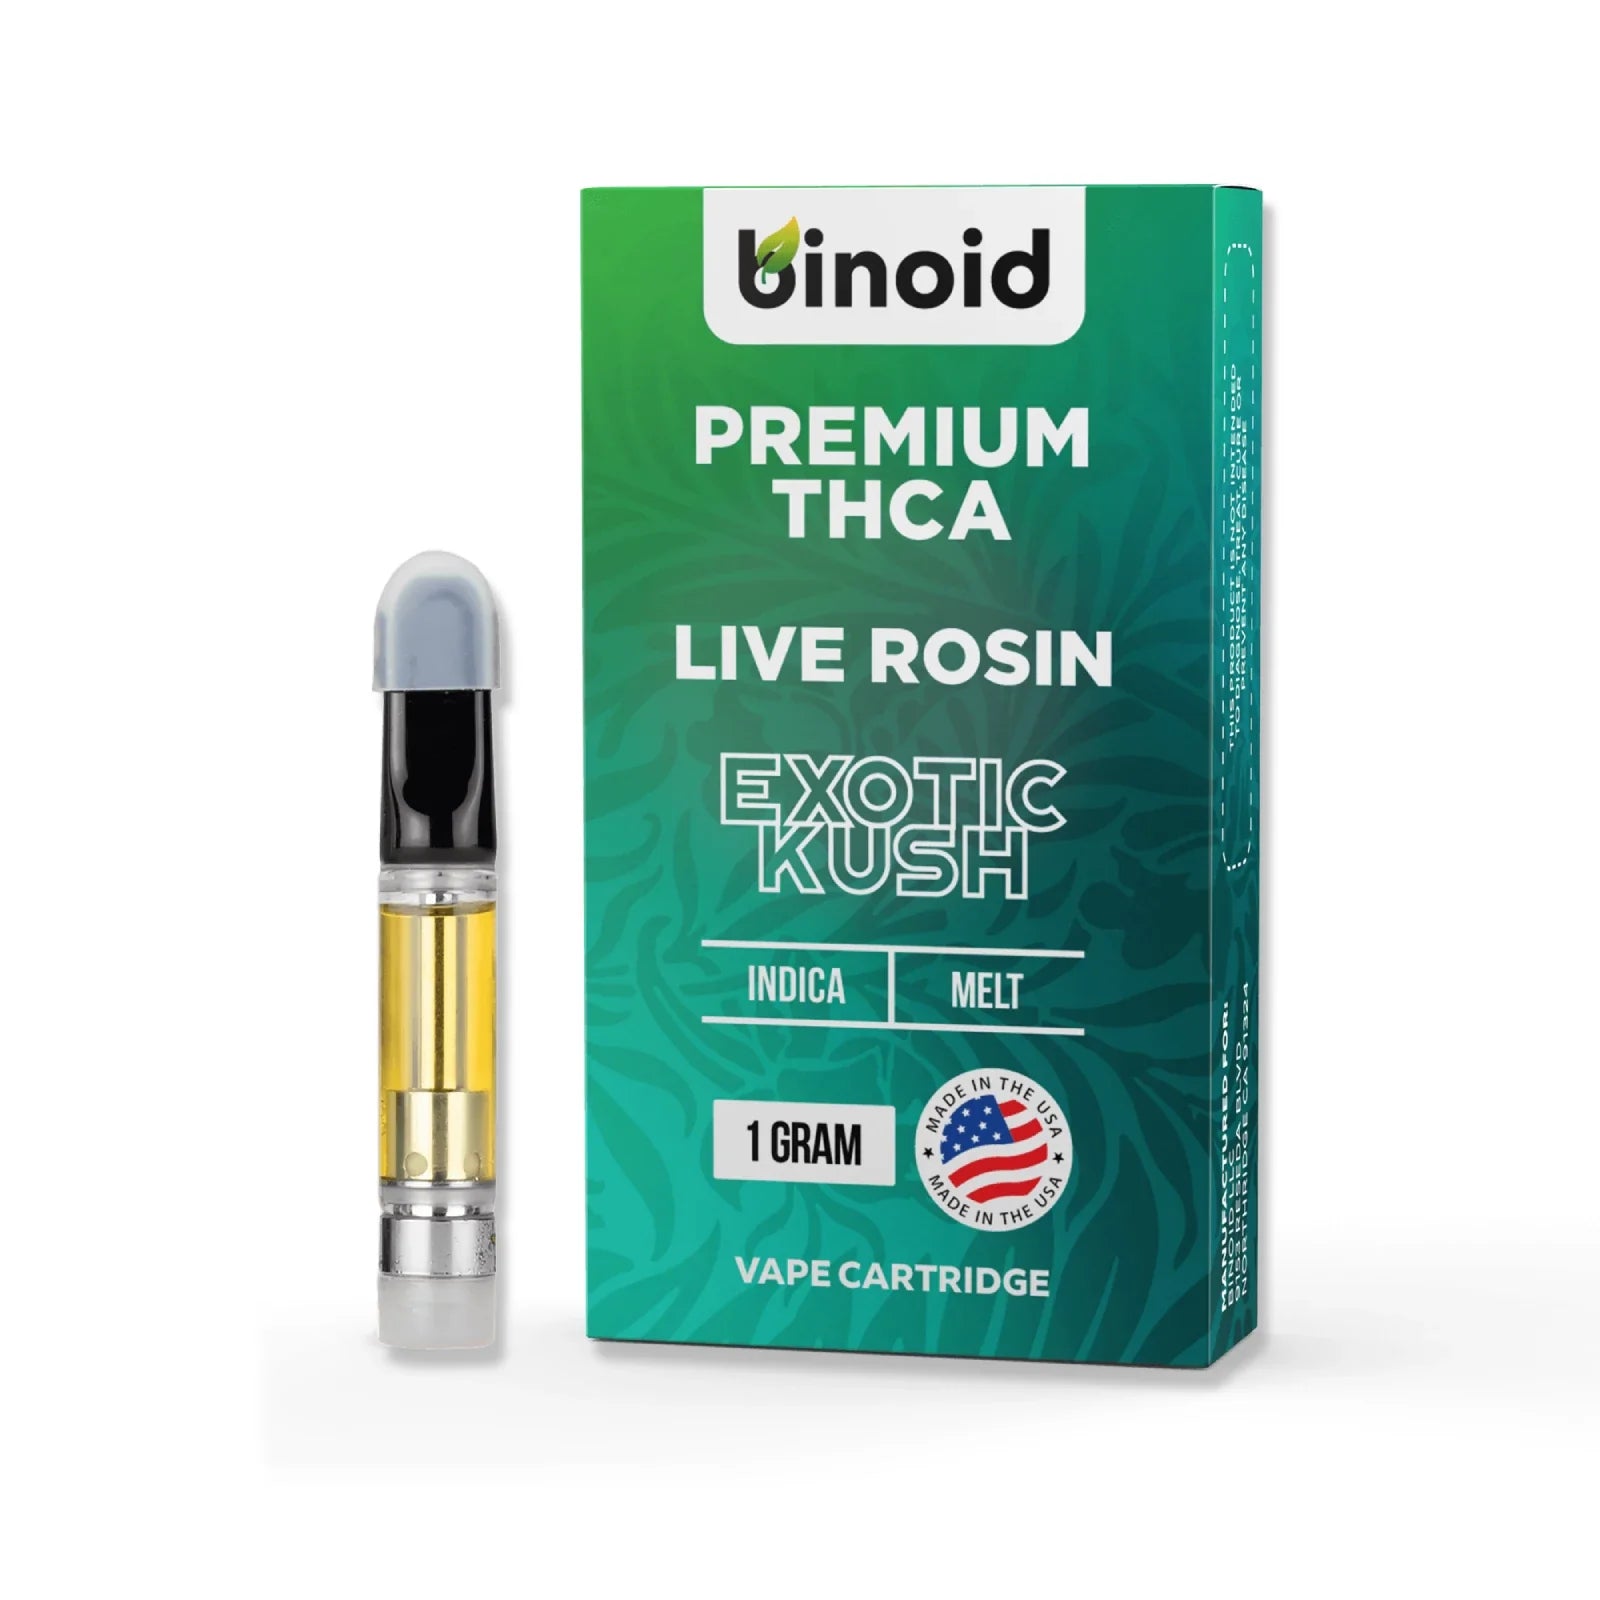 Binoid Premium THCA Live Rosin 510 Cartridges (1g) Best Price